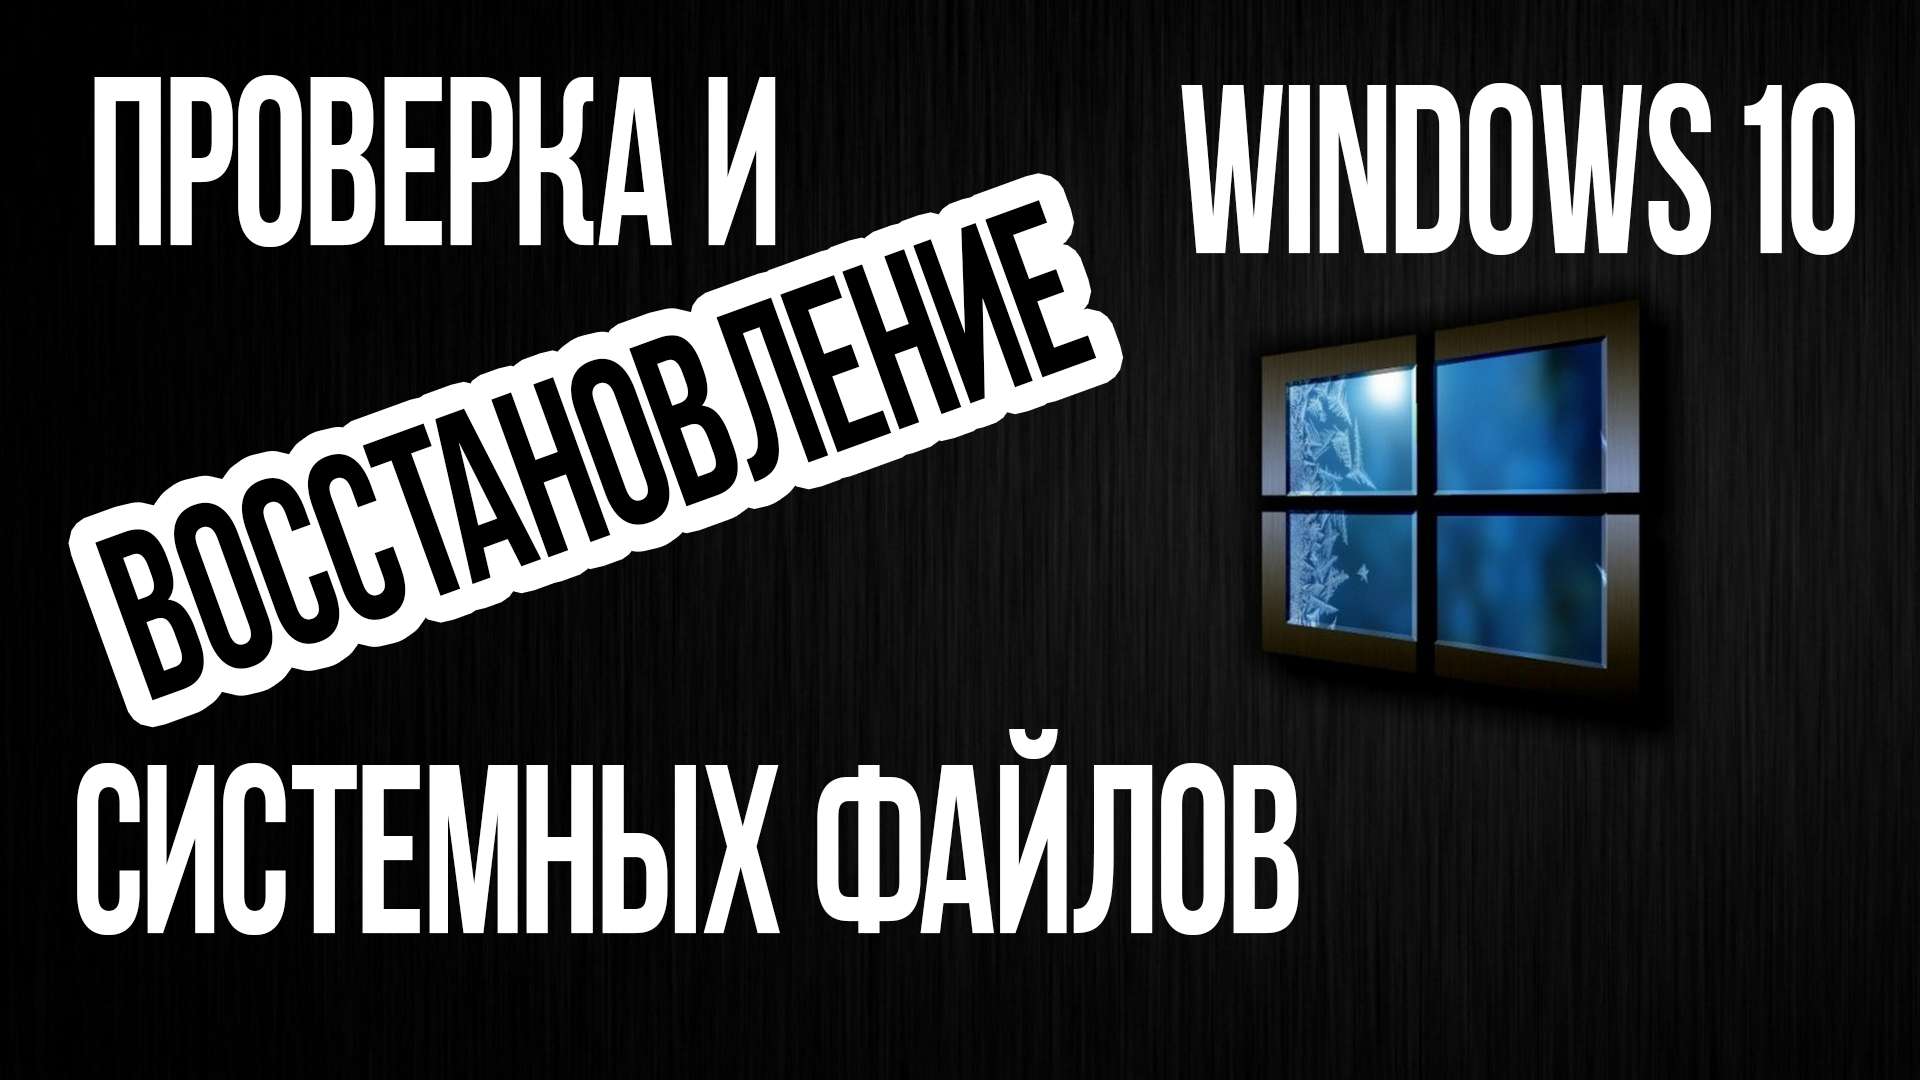 Как проверить ЦЕЛОСТНОСТЬ СИСТЕМНЫХ ФАЙЛОВ Windows 10?